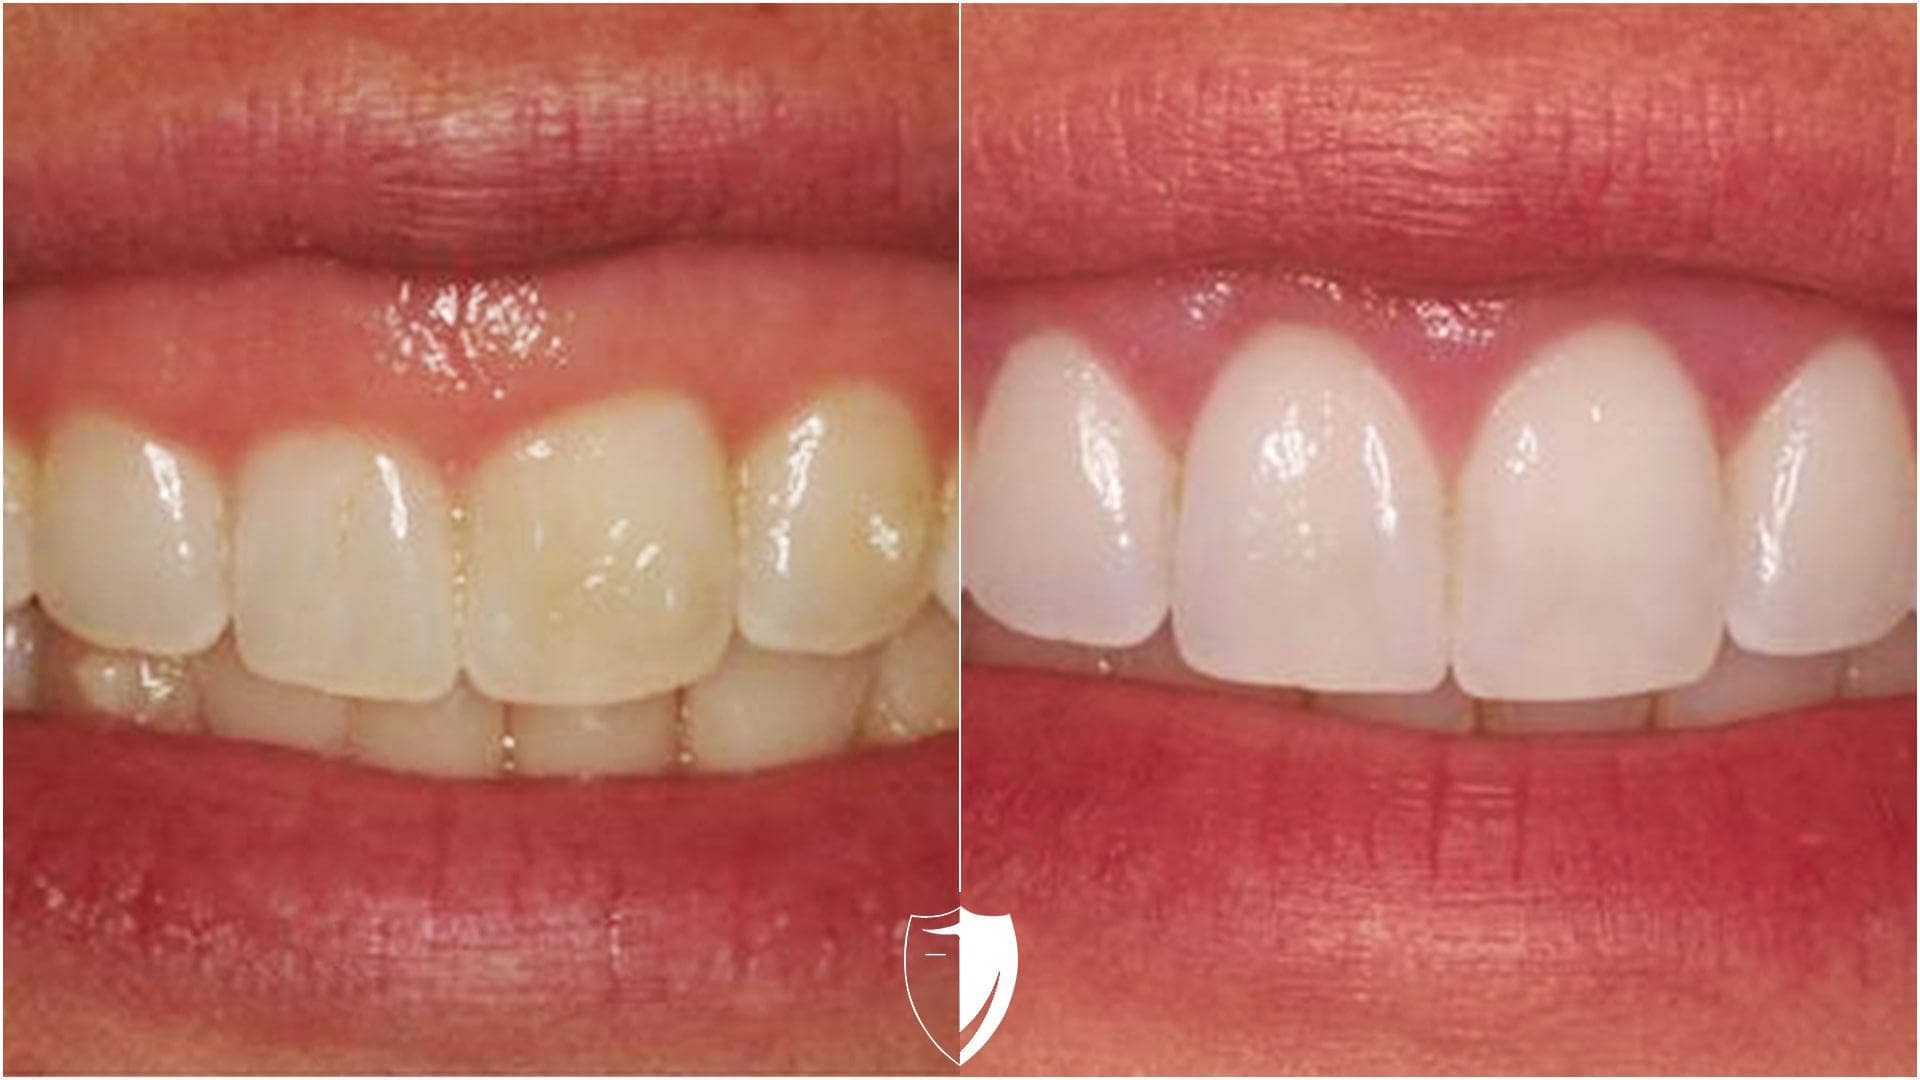 Klantfoto voor en na tandvleescontouren